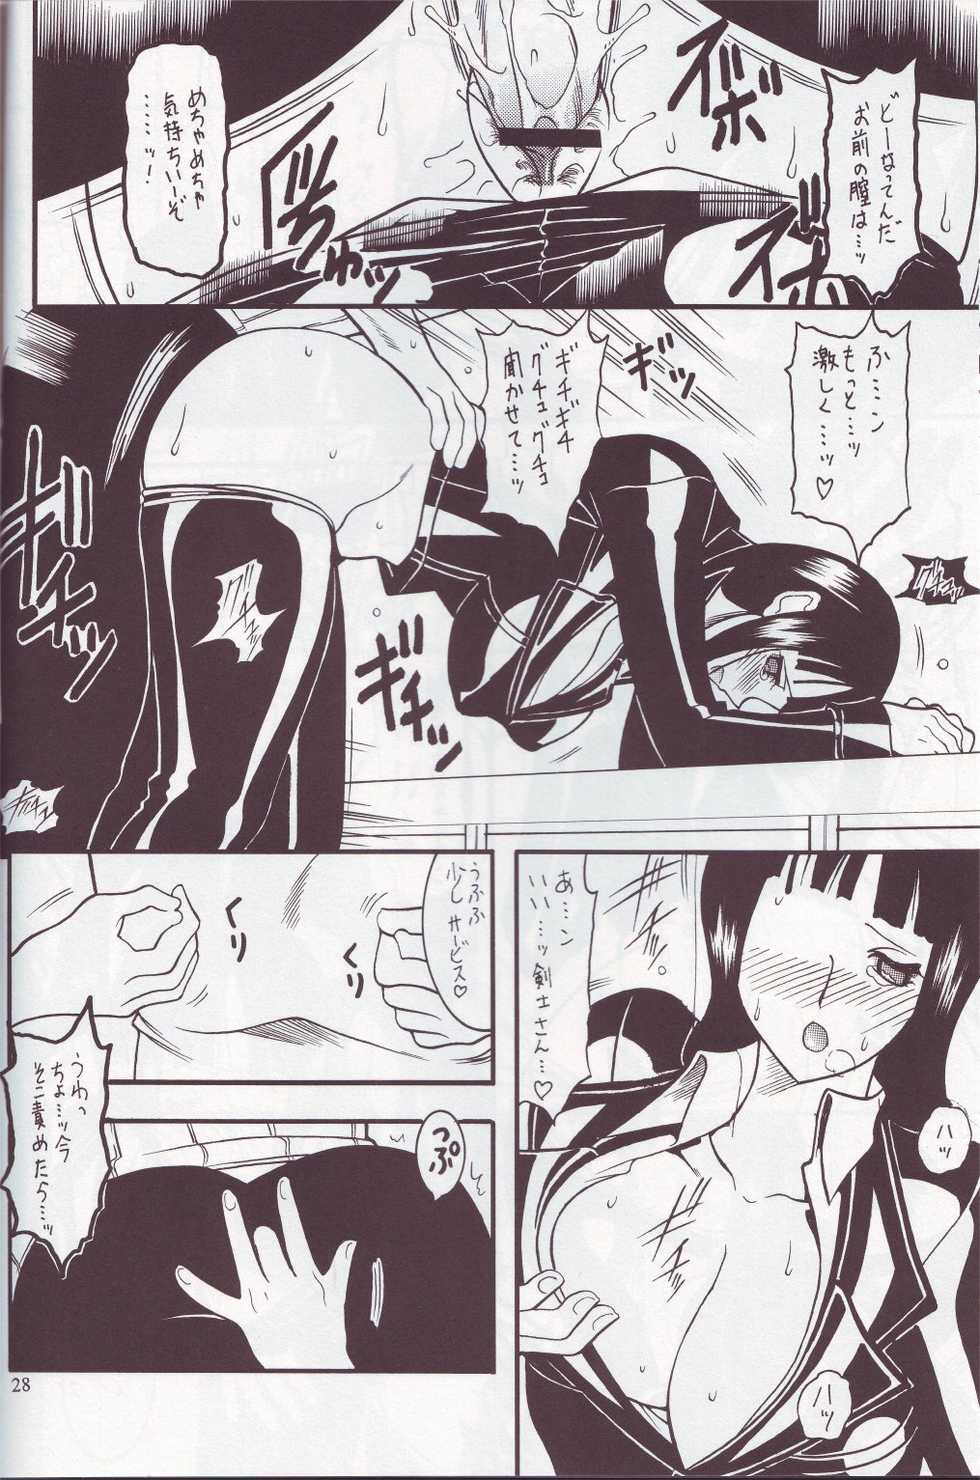 [SEMEDAIN G (Mizutani Mint, Mokkouyou Bond)] SEMEDAIN G WORKS vol.24 - Shuukan Shounen Jump Hon 4 (Bleach, One Piece) - Page 27